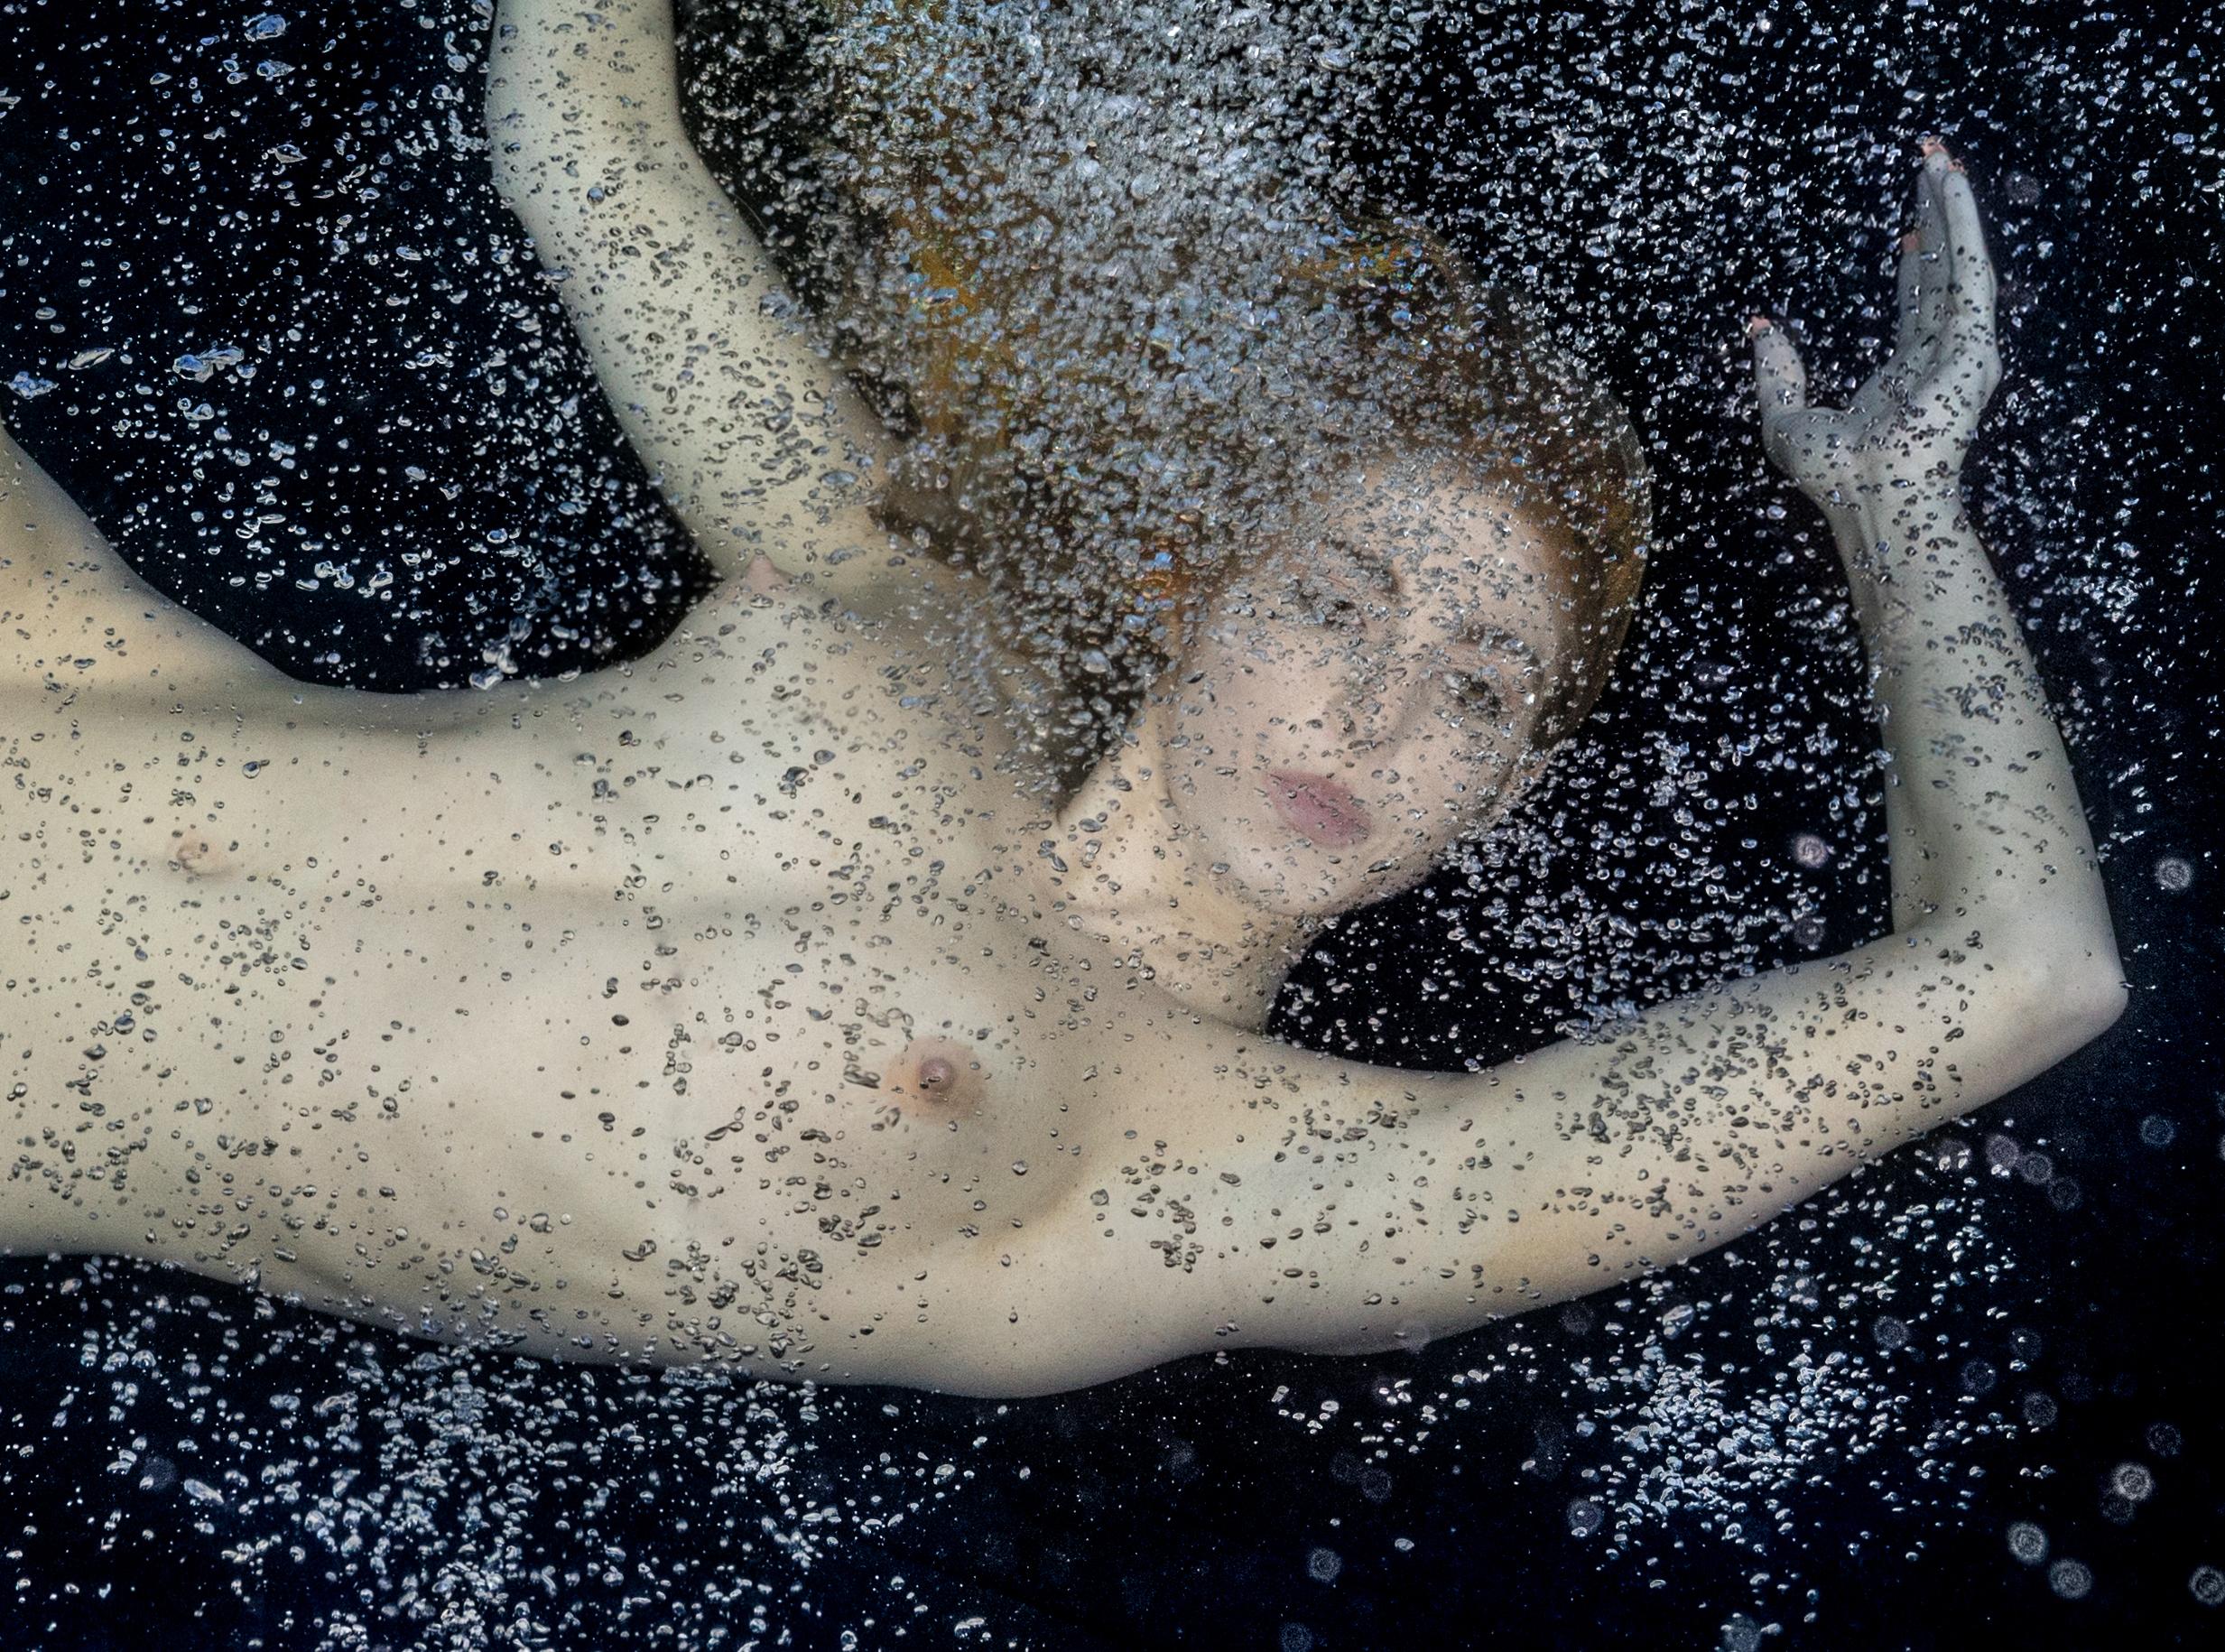 Unterwasseraufnahme einer jungen Frau mit goldenem Haar auf dem Grund eines Schwimmbeckens.  Ihr schöner nackter Körper ist in Wolken von Luftblasen gehüllt. 

Original-Pigmentdruck in Galeriequalität.  
Limitierte Auflage von 24 Drucken